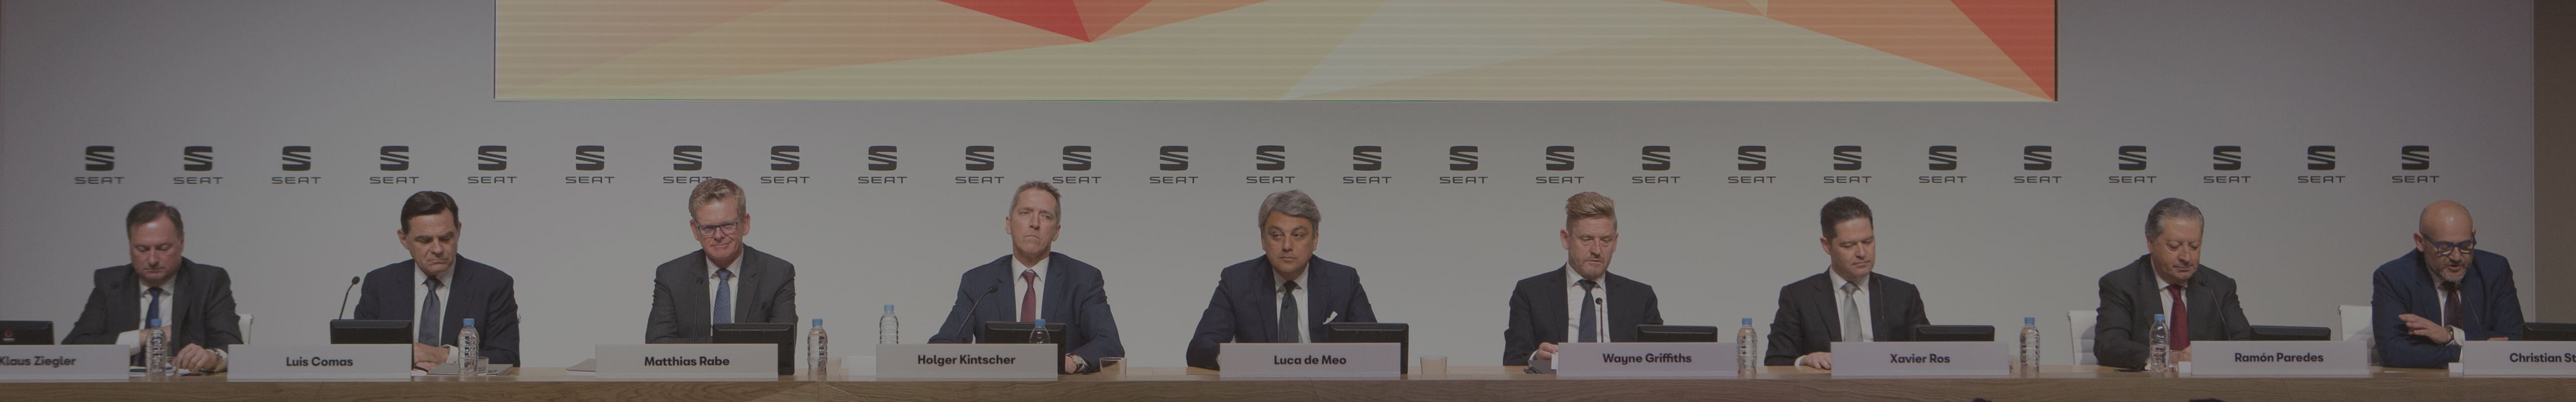 Un anno di record per SEAT - SEAT commitee of Directors. President and CEO Luca de Meo at SEAT Annual media conference 2018